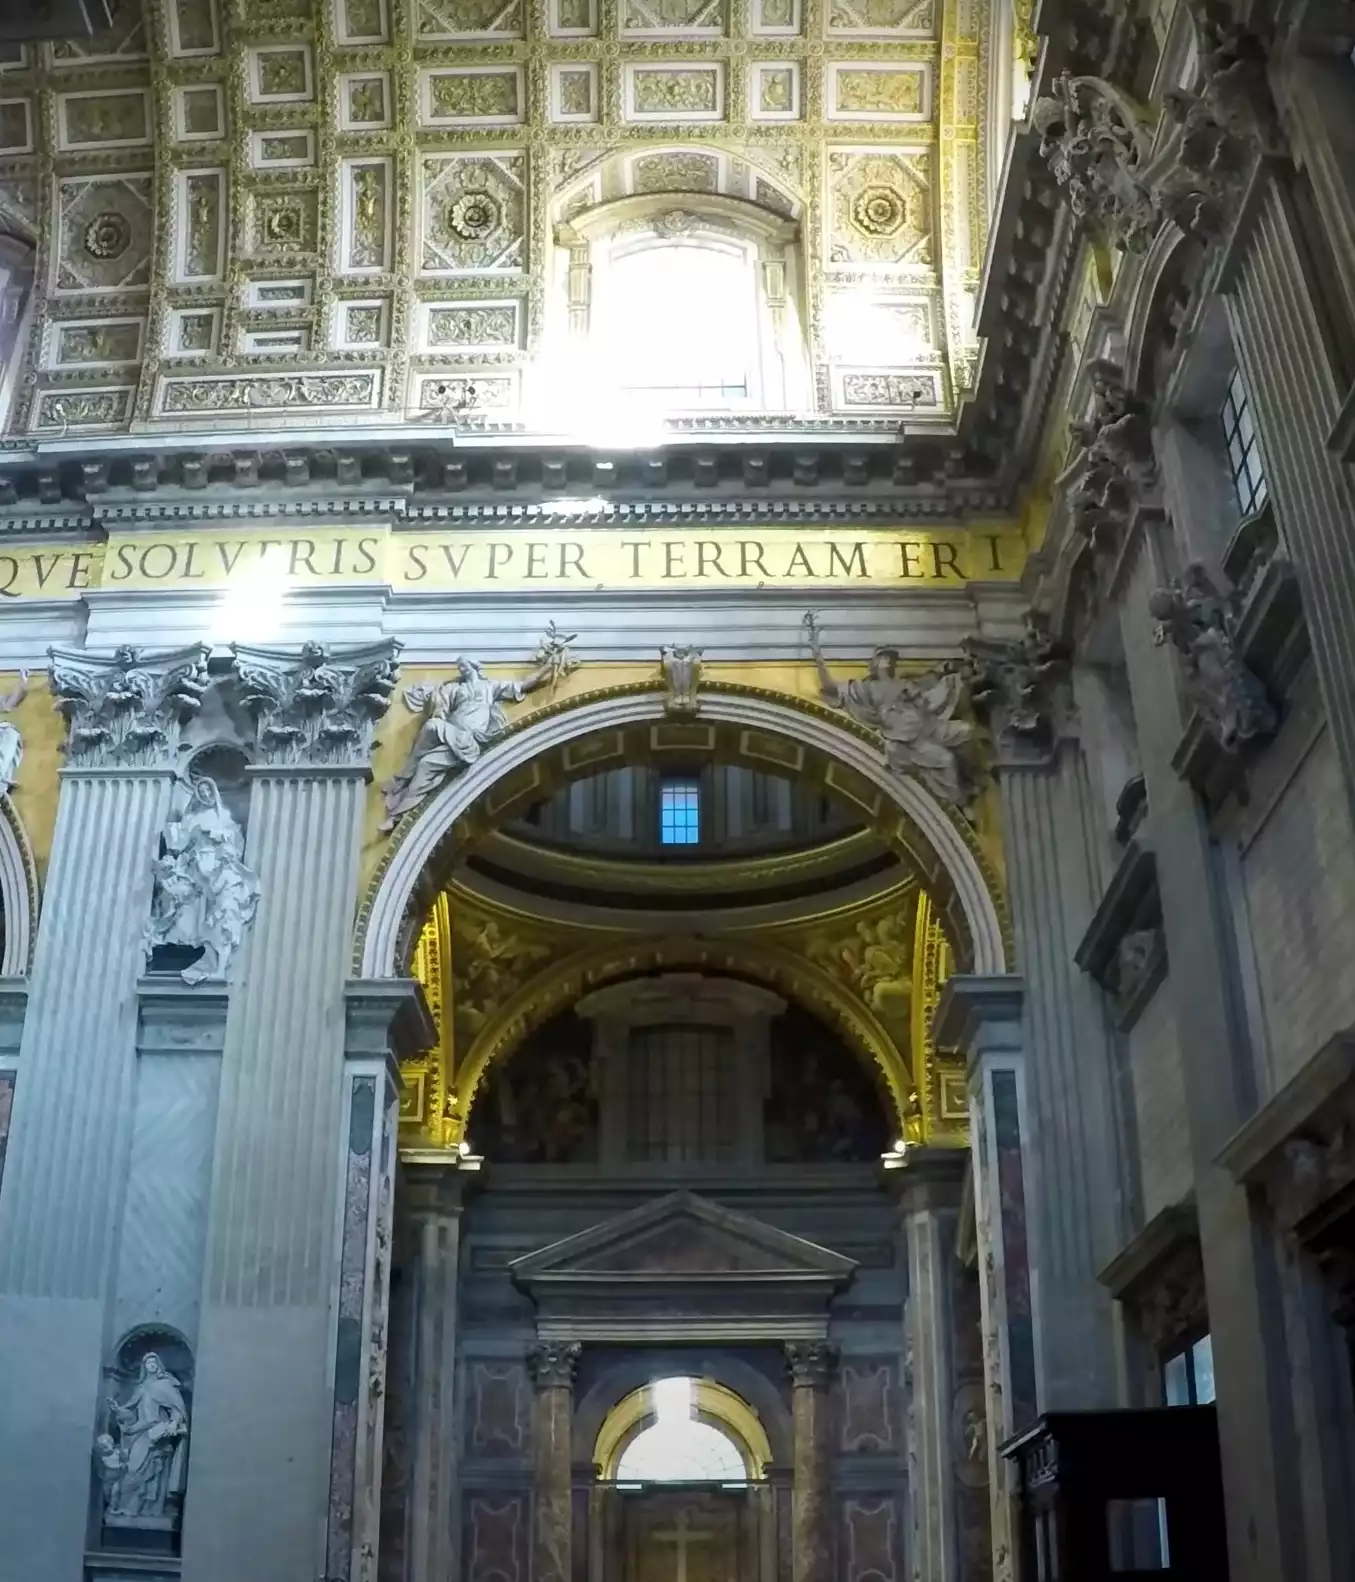 Inside-St.-Peter's-Basilica-artistic-grandeur